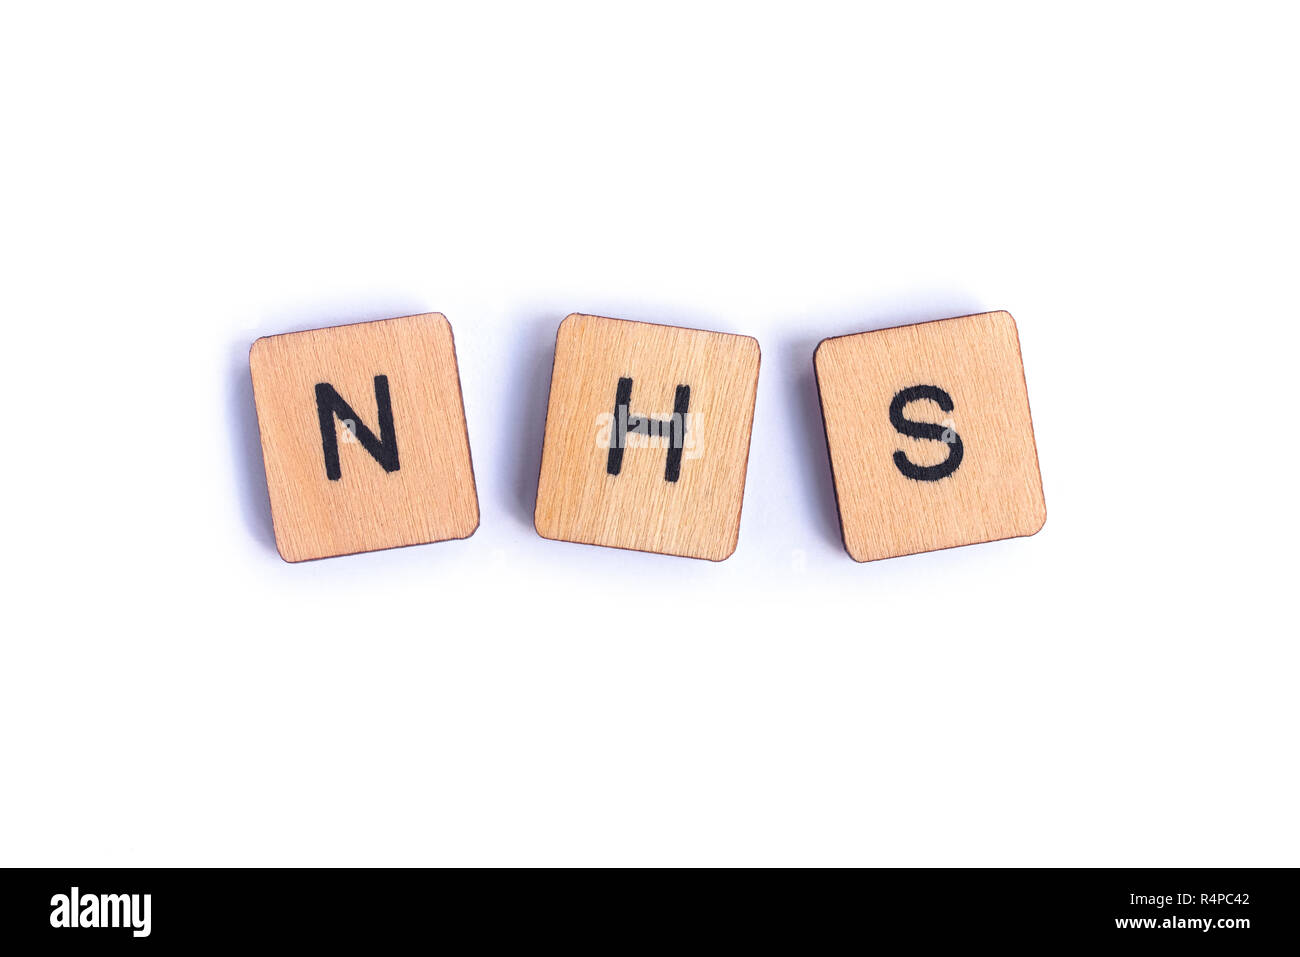 Londres, UK - 7 juillet 2018 : l'abréviation NHS - National Health Service - l'épeautre avec lettre en bois, tuiles de SCRABBLE le 7 juillet 2018. Banque D'Images